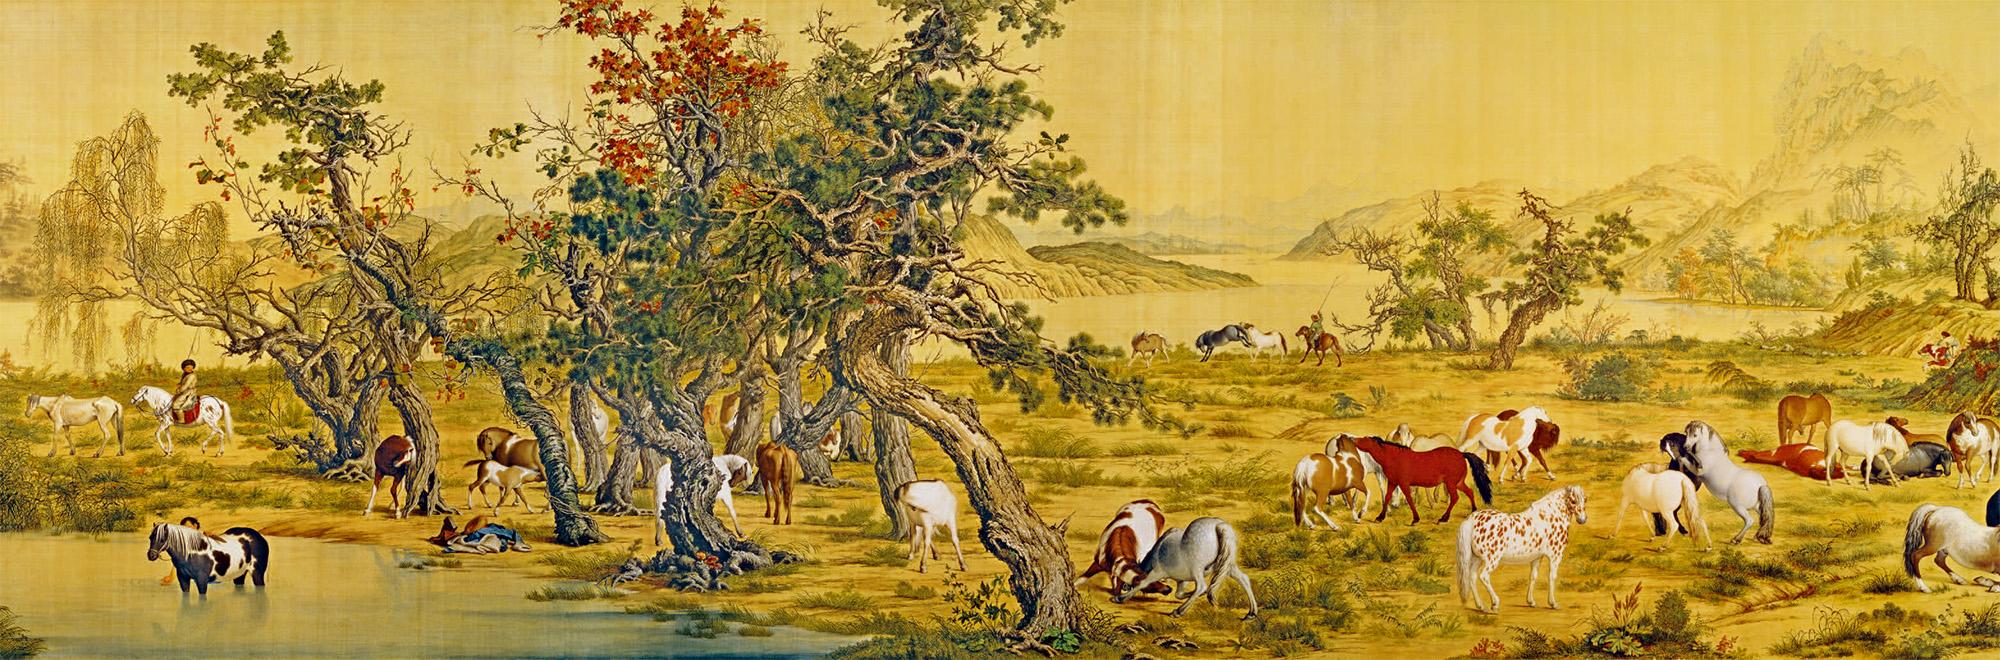 百骏图 〔清朝〕郎世宁 1724—1728年 台北故宫博物院 绢本画作全长